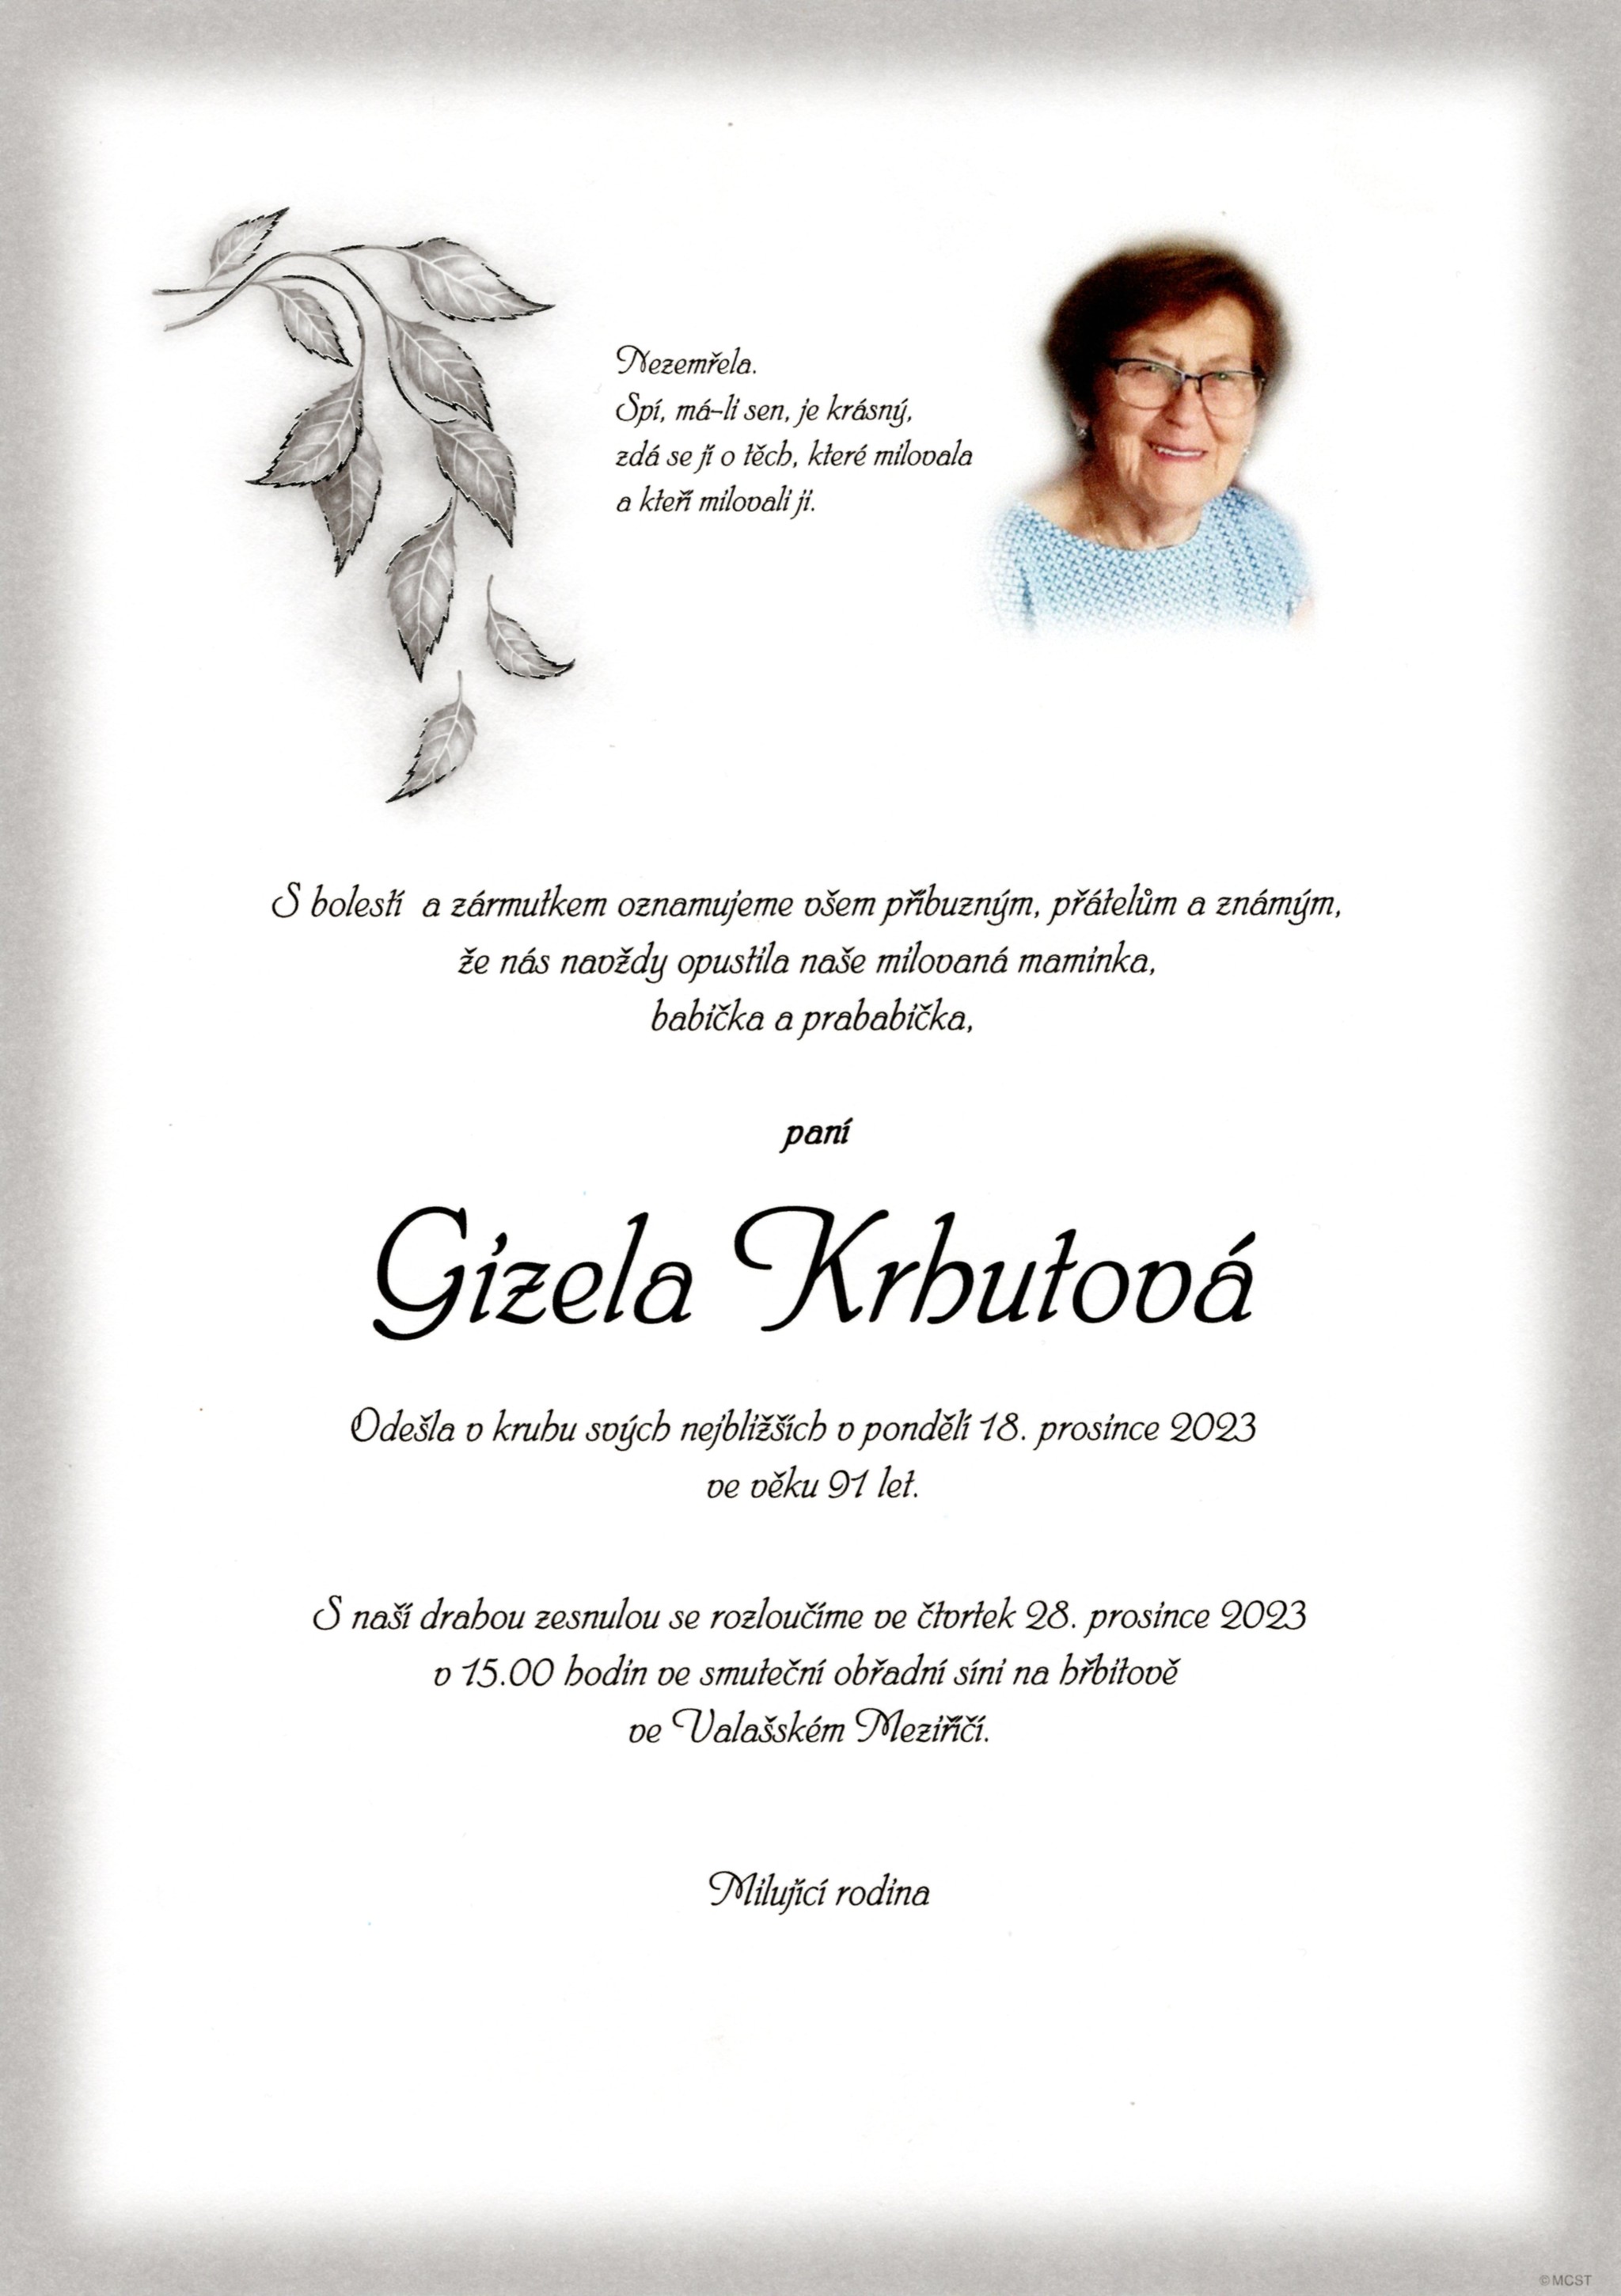 Gizela Krhutová